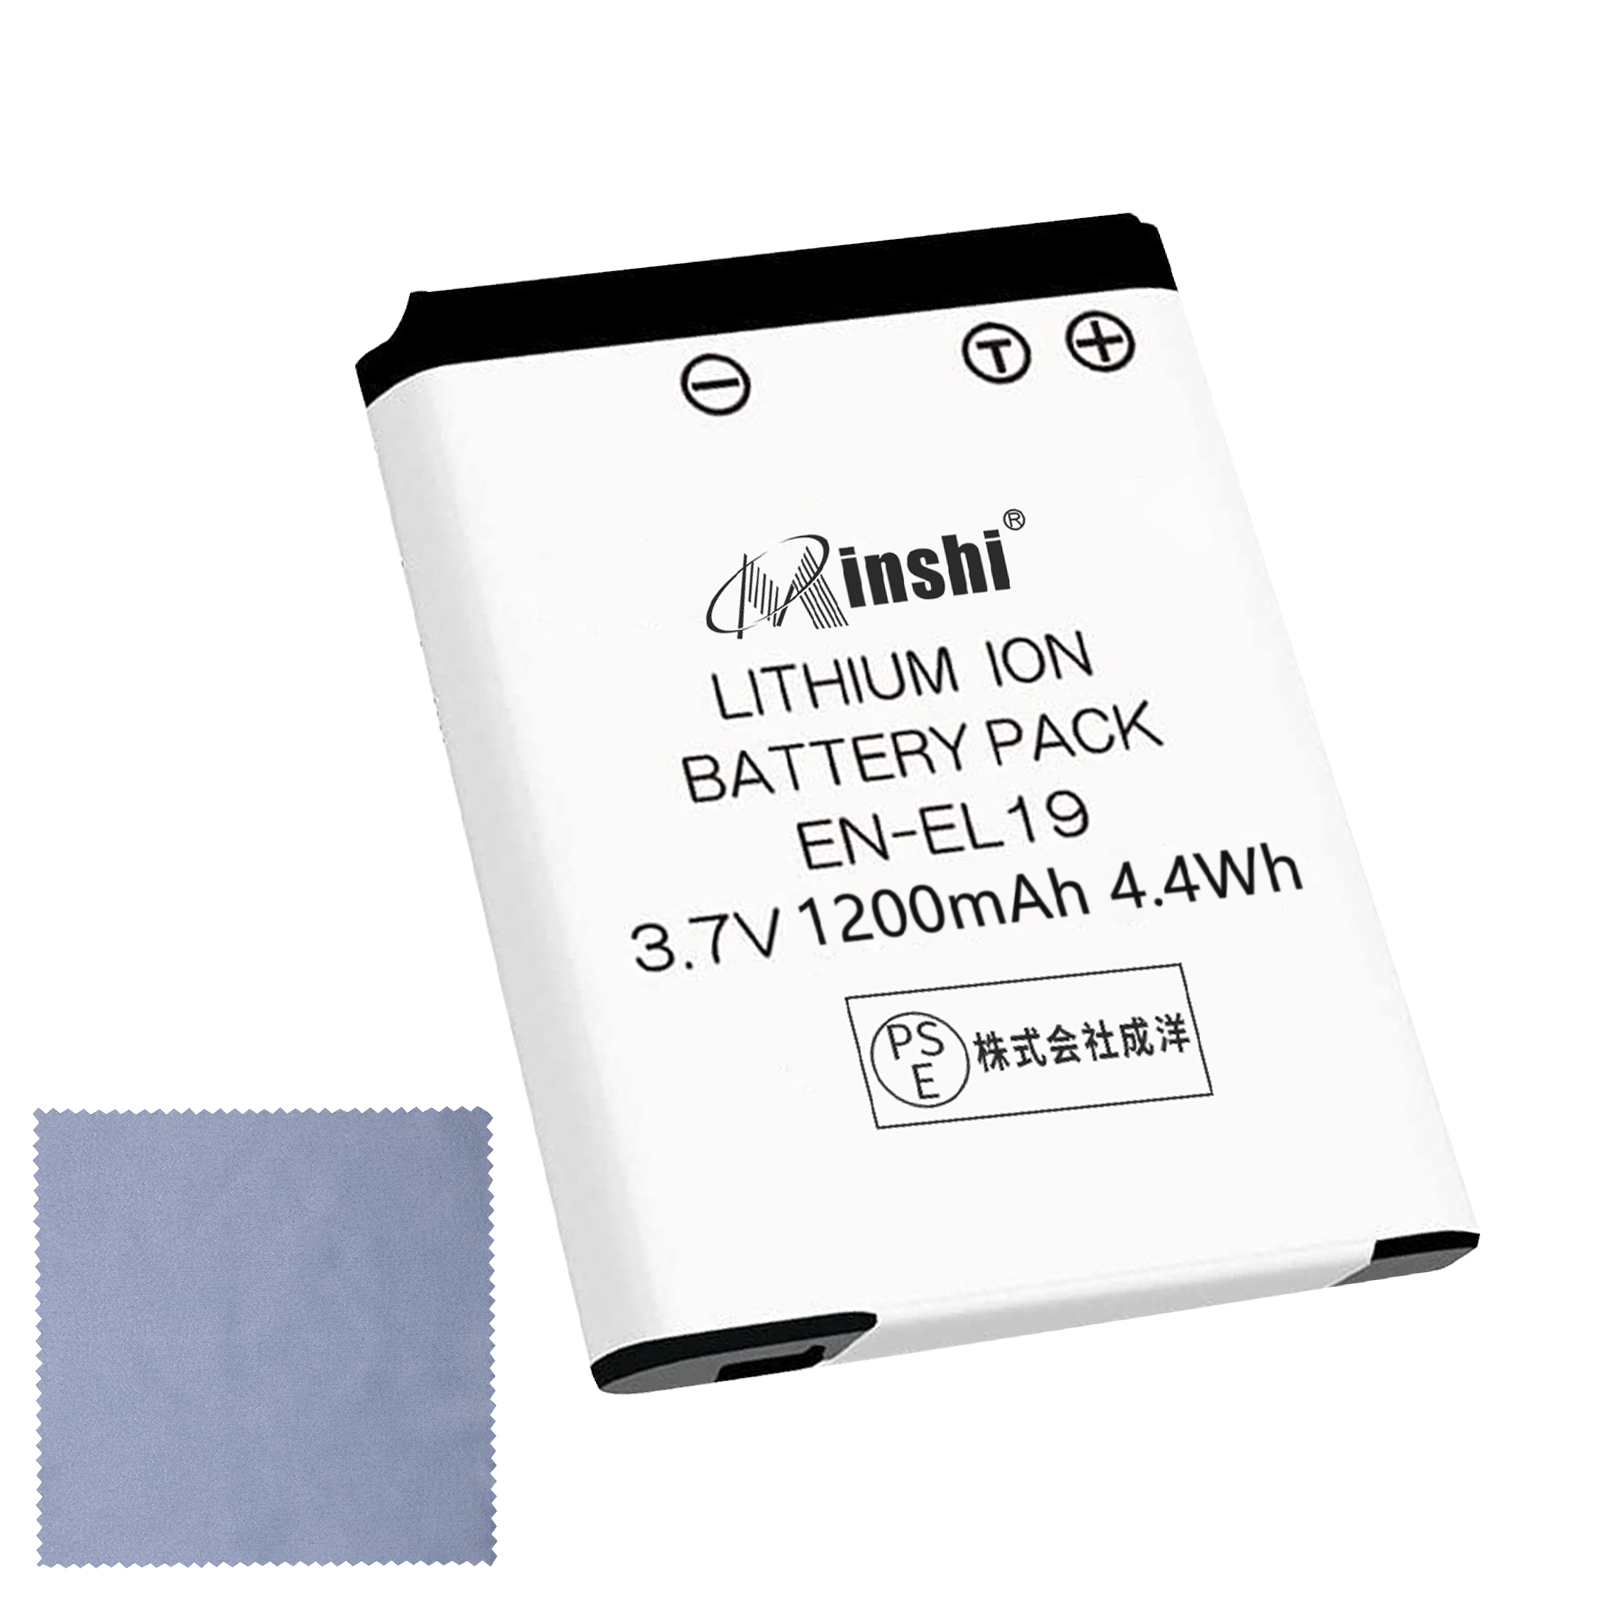 【清潔布ー付】minshi NIKONニコン   S4300 対応  1200mAh  高品質 EN-EL19 交換用バッテリー